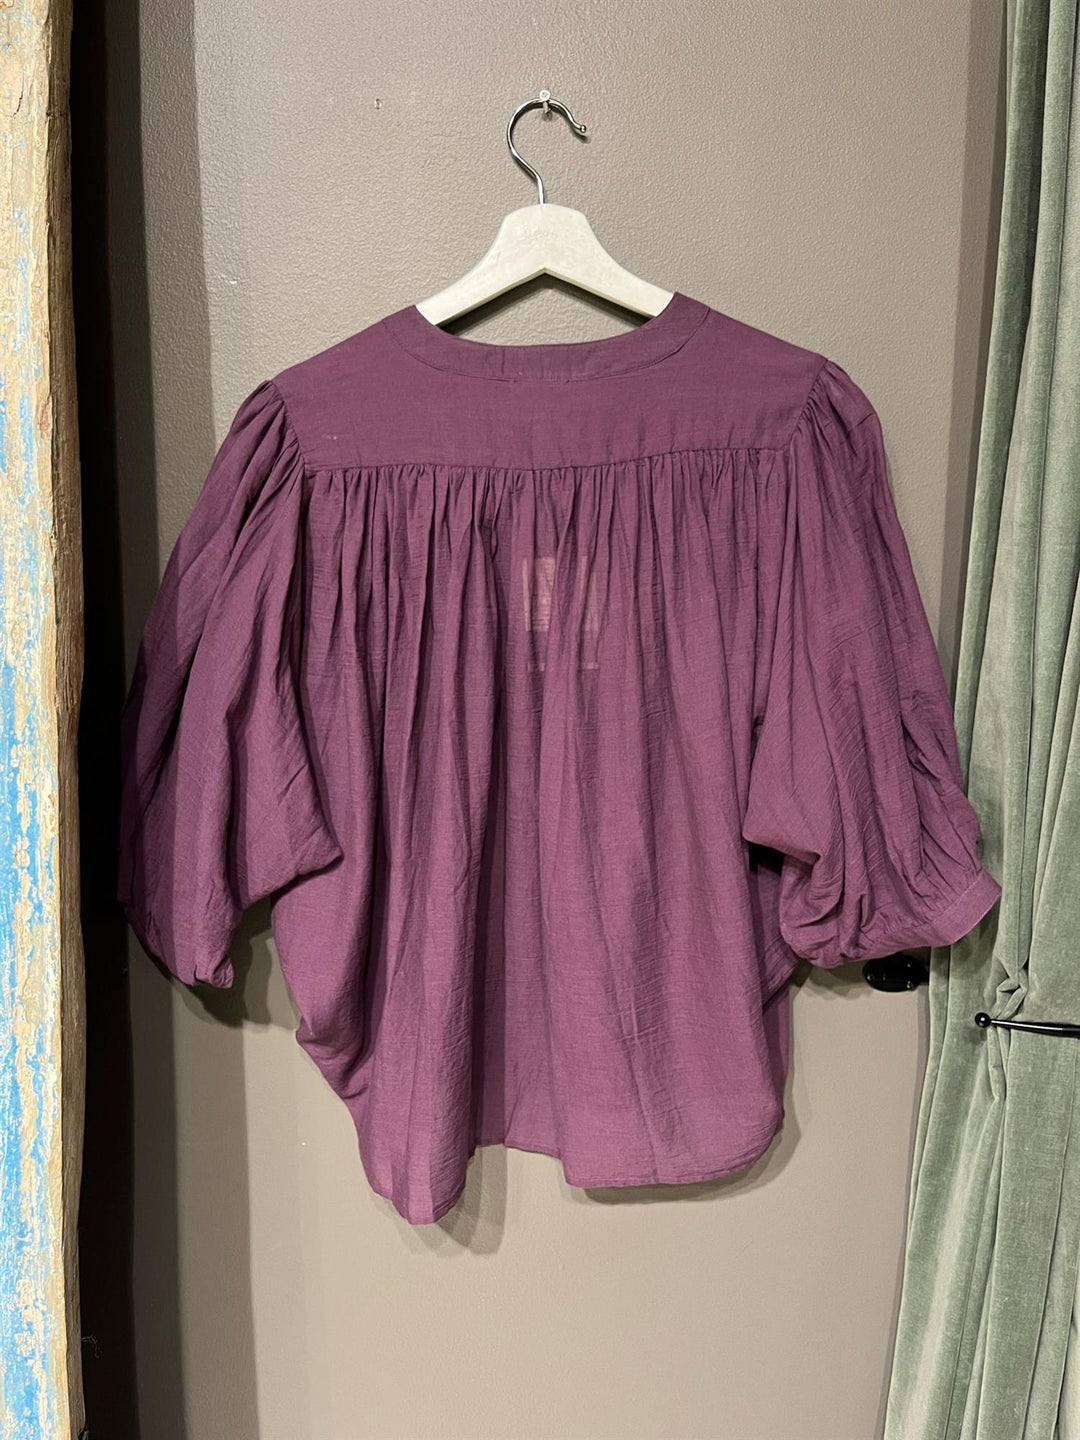 Skjorte Celesto violet